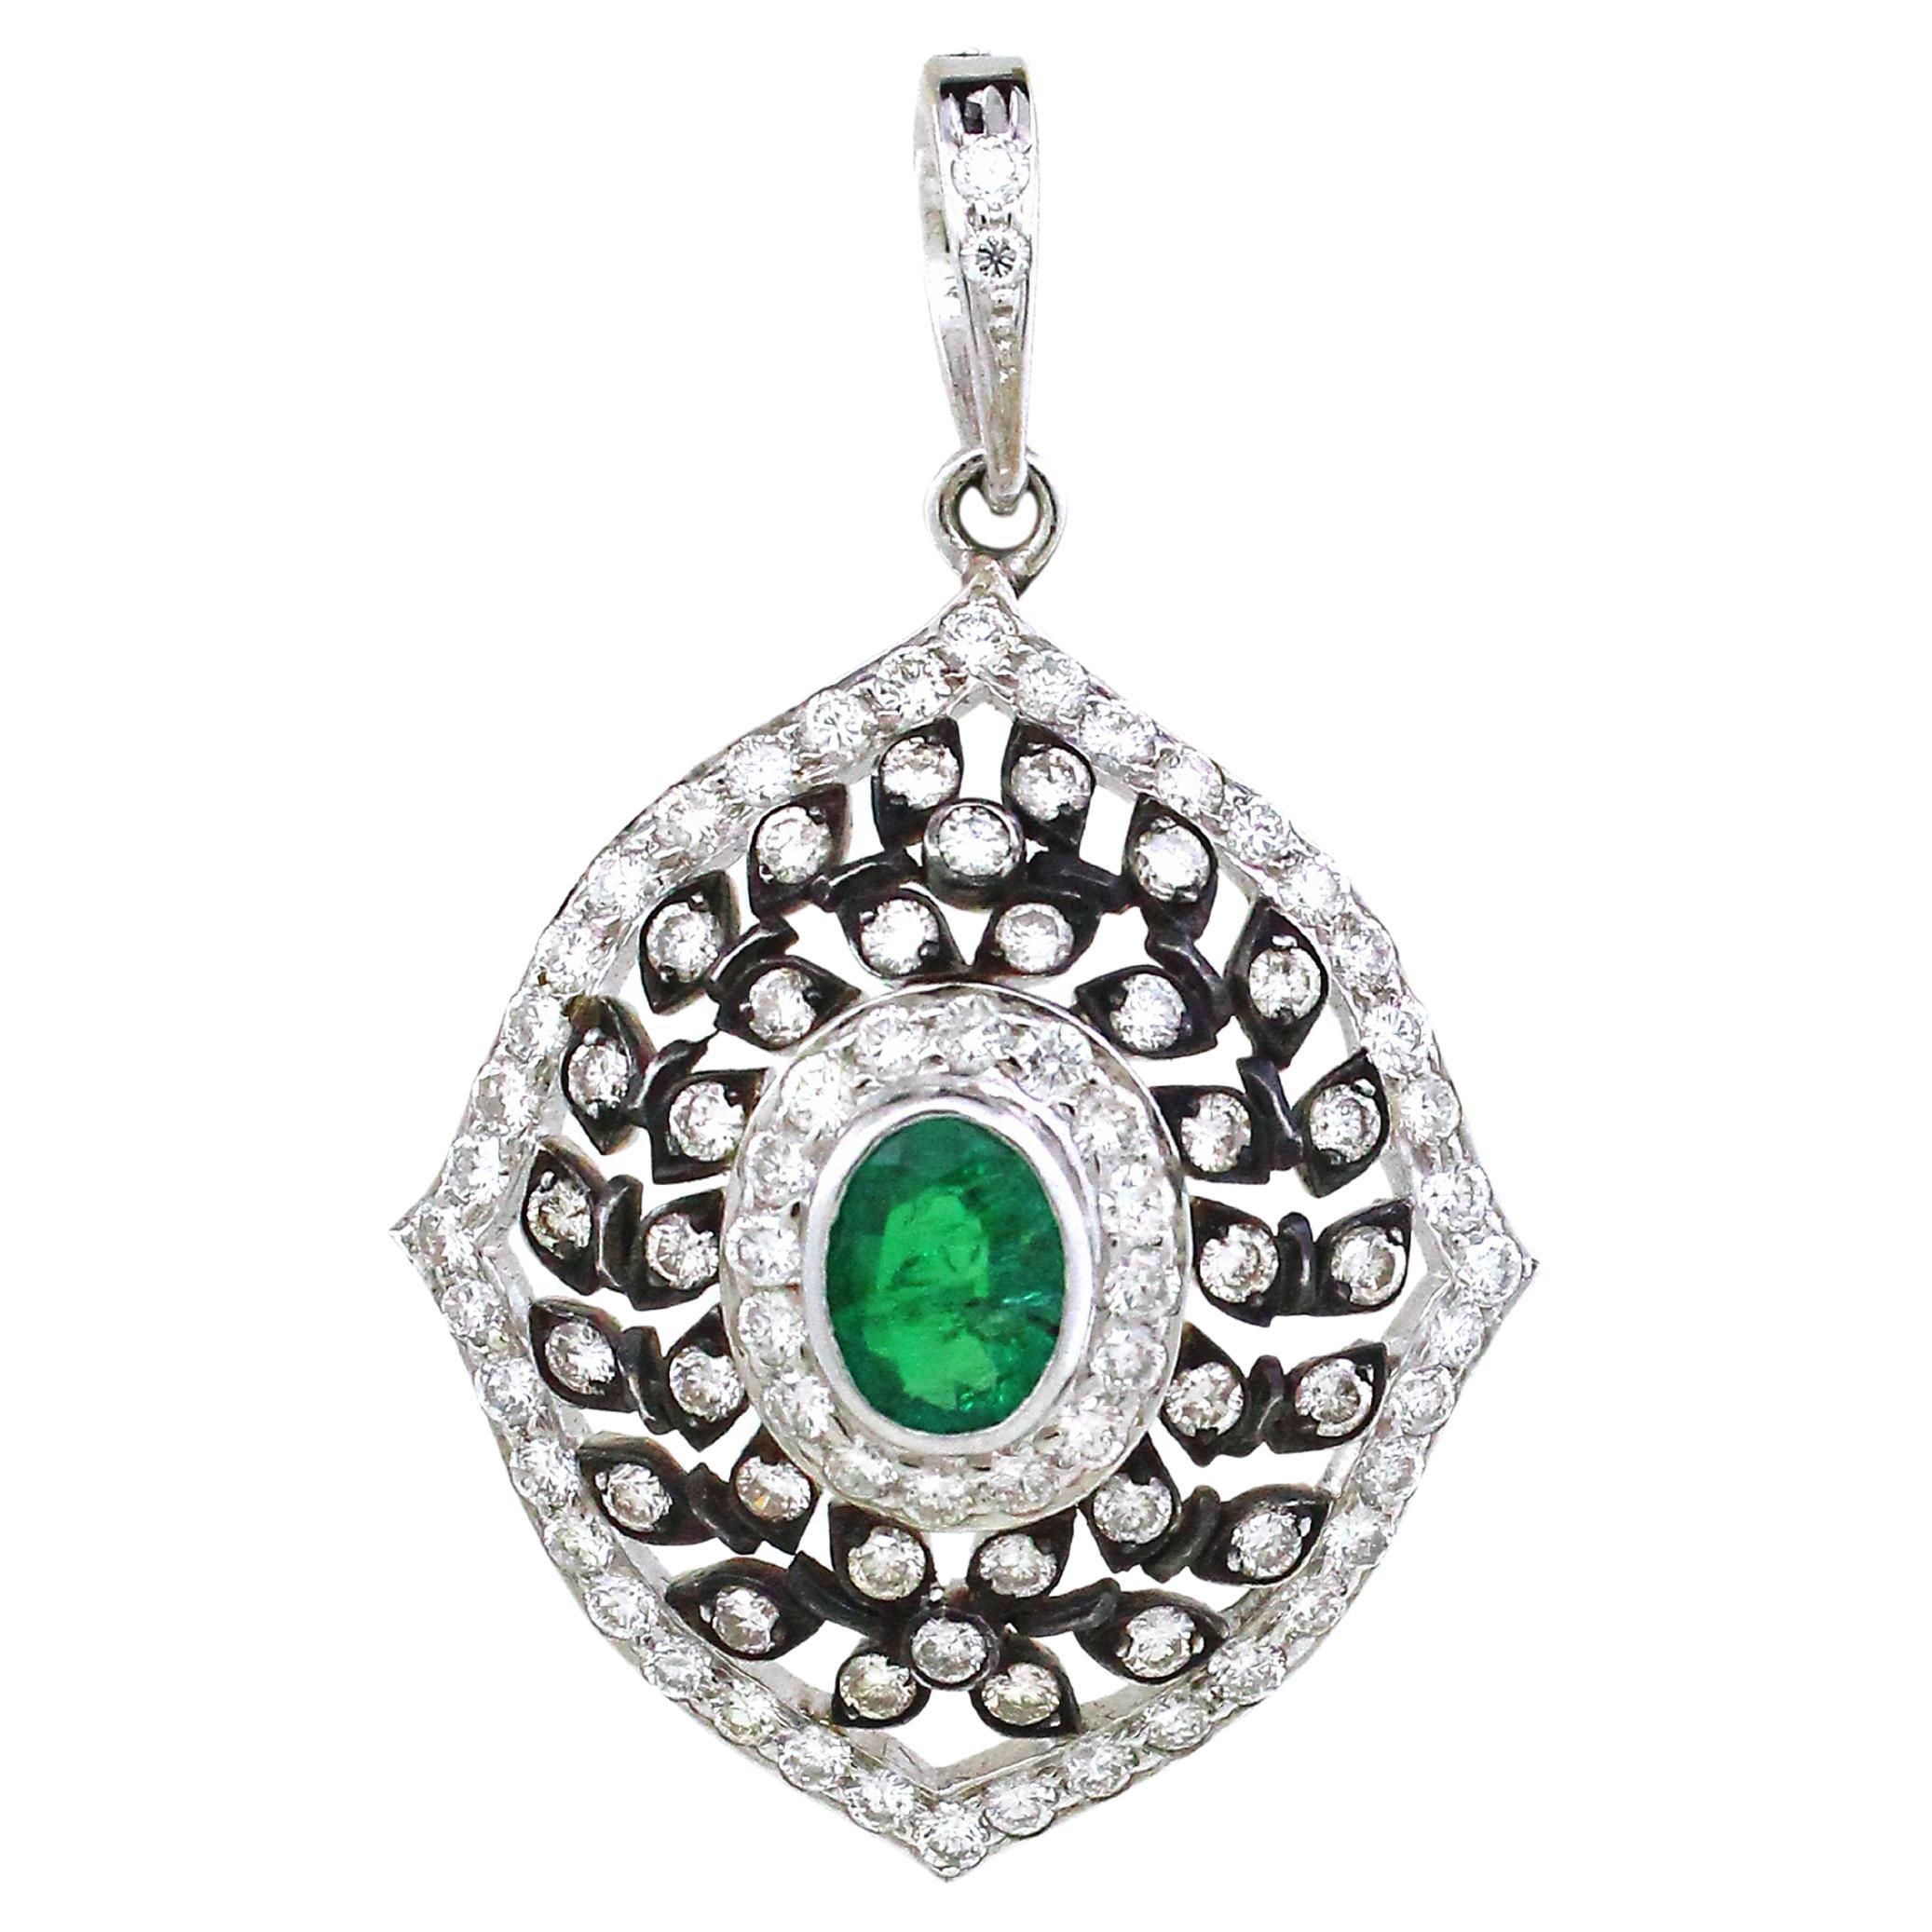 1.5 carats of emerald Pendant